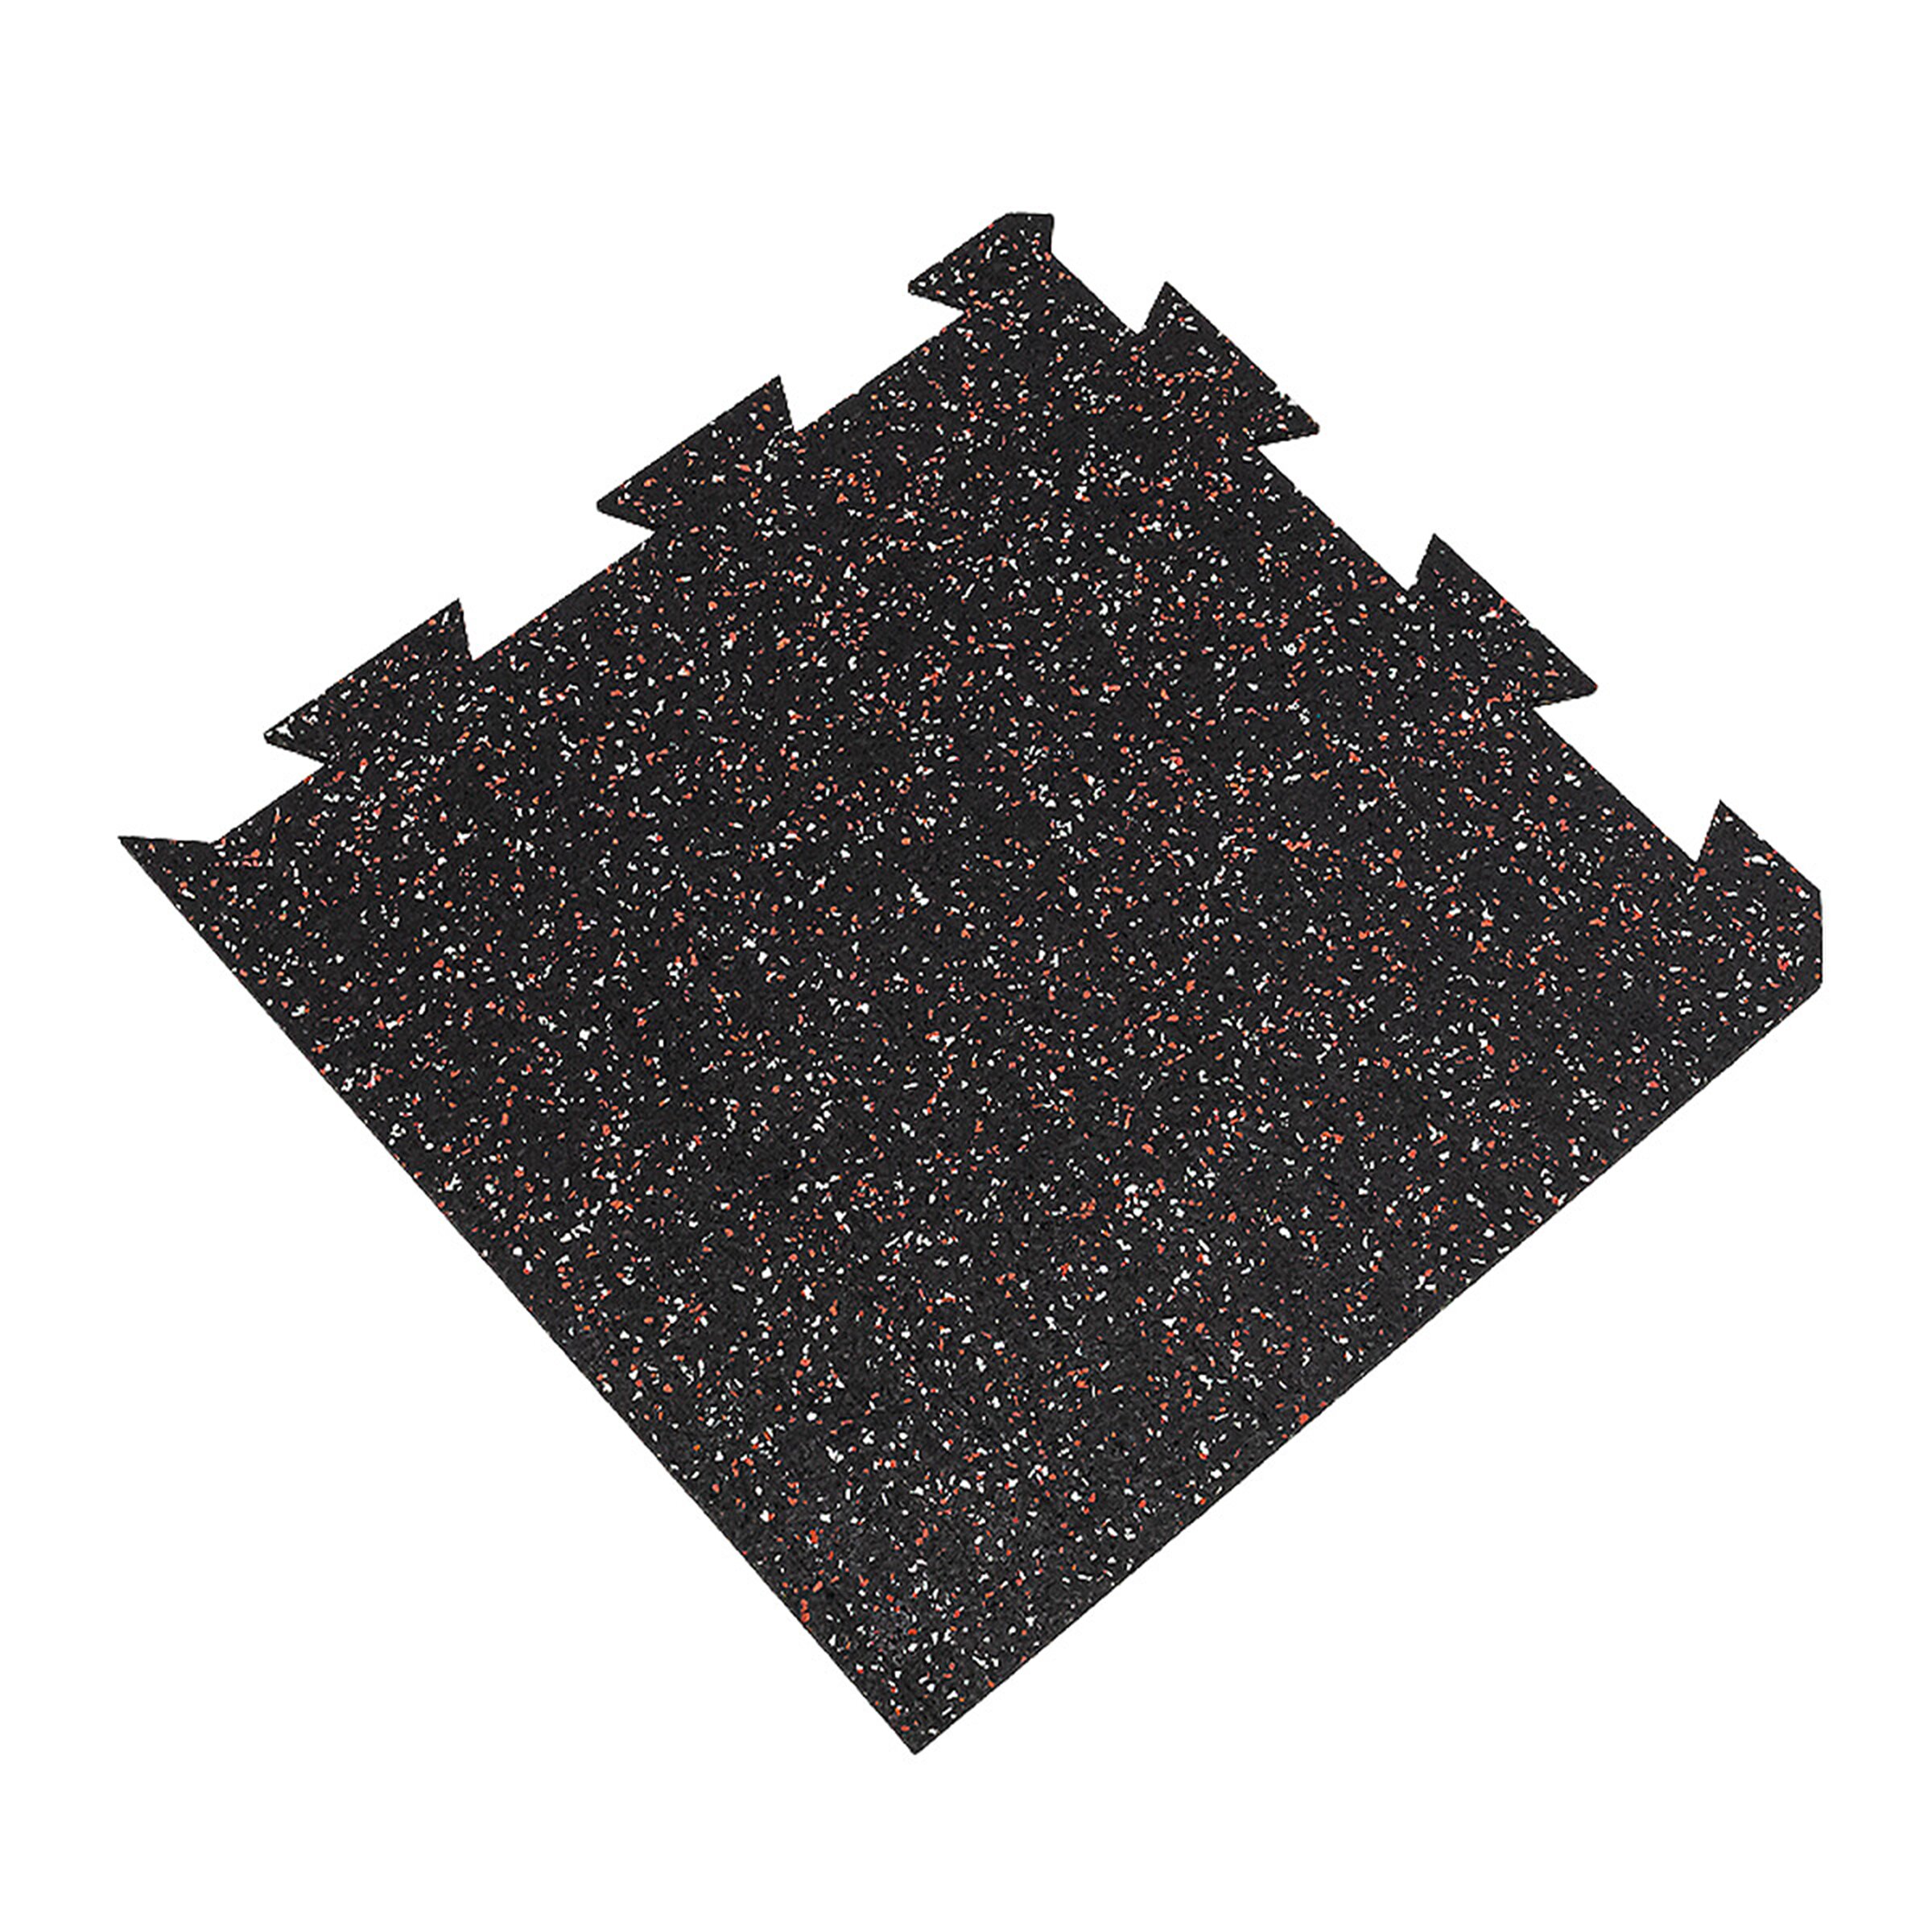 Černo-bílo-červená podlahová guma FLOMA FitFlo SF1050 - délka 50 cm, šířka 50 cm, výška 1 cm